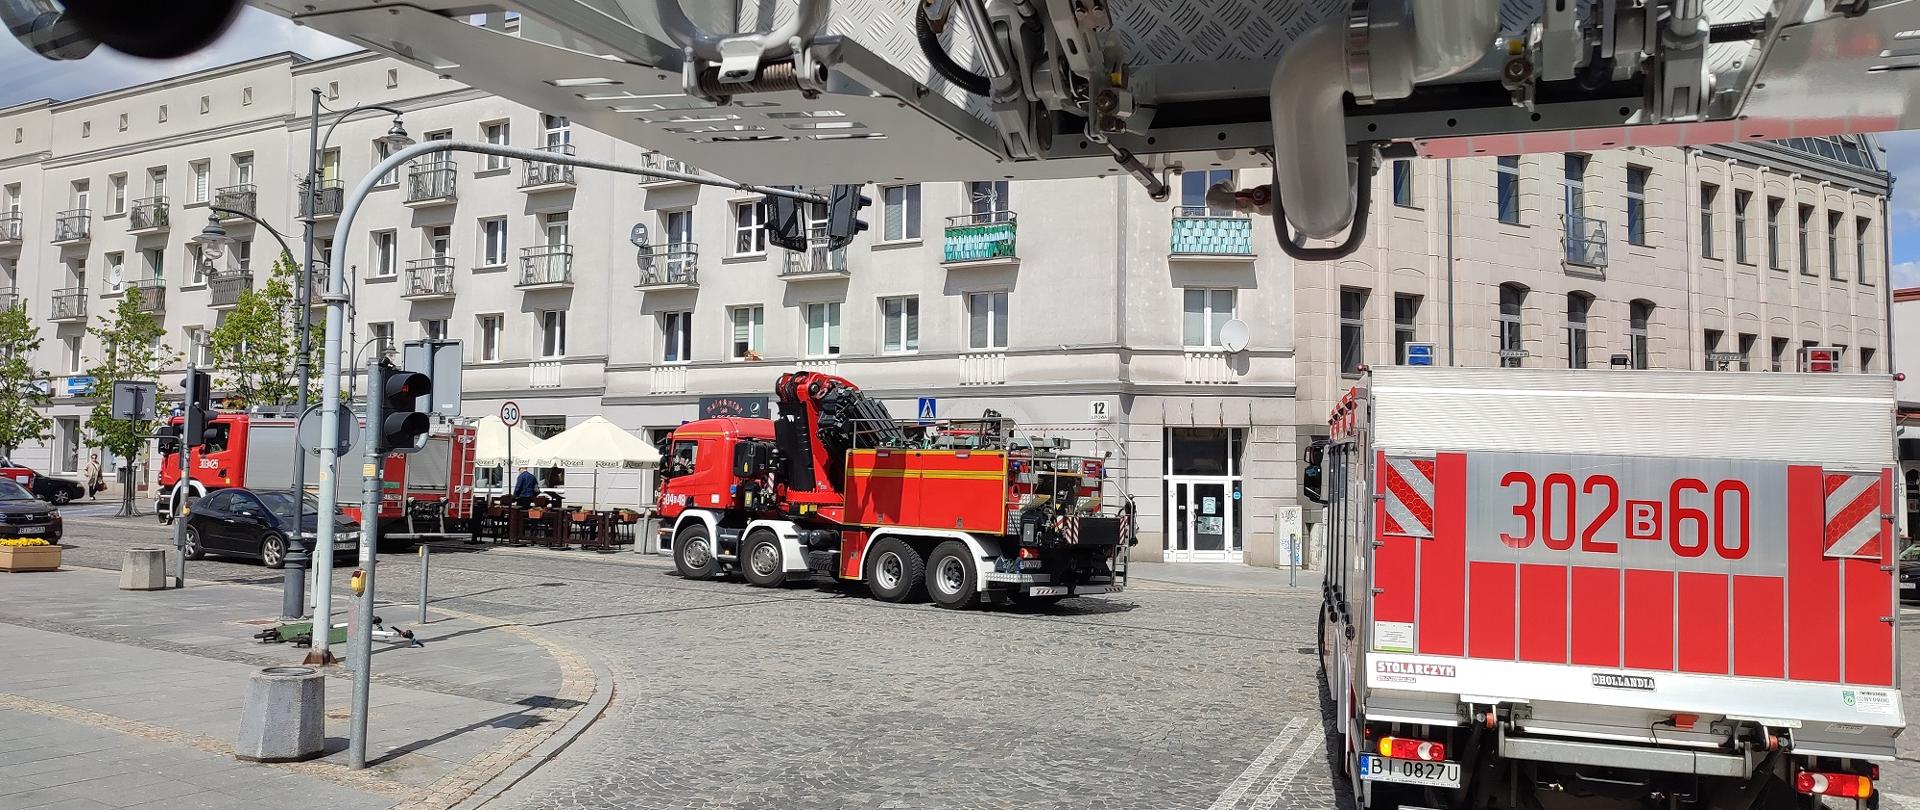 Uroczysty przejazd kolumny pojazdów pożarniczych ulicami Białegostoku